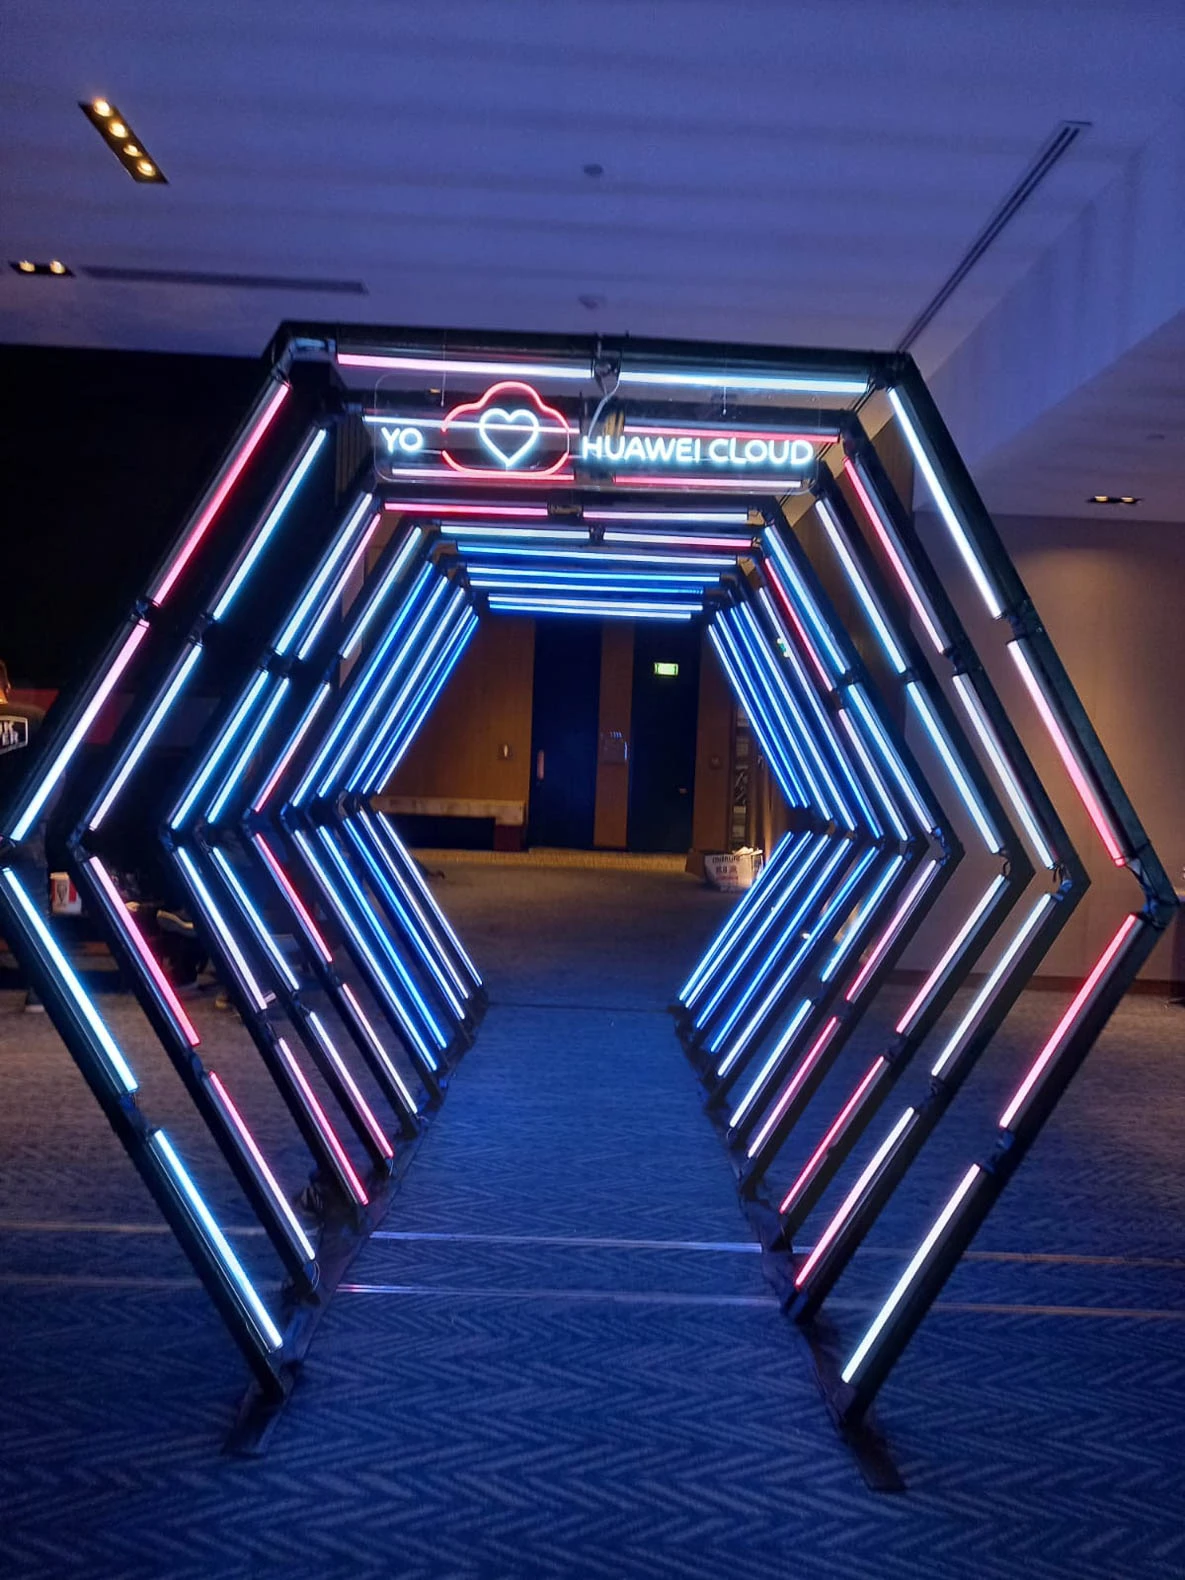 Túnel LED hexagonal multicolor: Efectos luminosos espectaculares en el camino hacia un evento, con luces cambiantes y vibrantes. - Túnel hexagonal led - scratch perú.